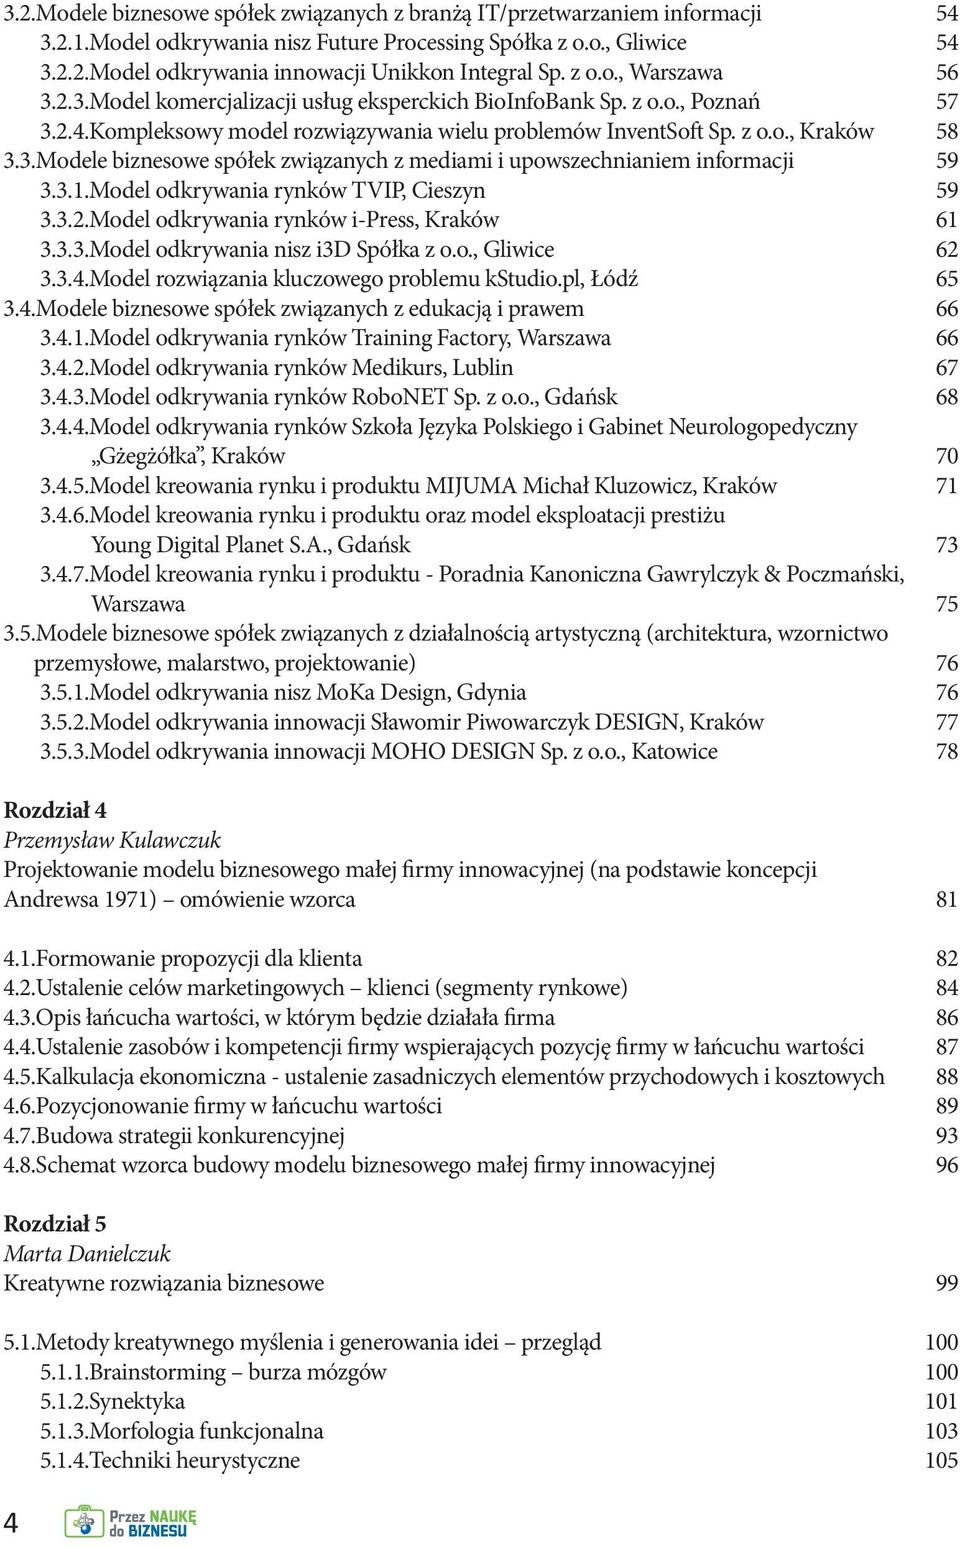 3.1.Model odkrywania rynków TVIP, Cieszyn 59 3.3.2.Model odkrywania rynków i-press, Kraków 61 3.3.3.Model odkrywania nisz i3d Spółka z o.o., Gliwice 62 3.3.4.